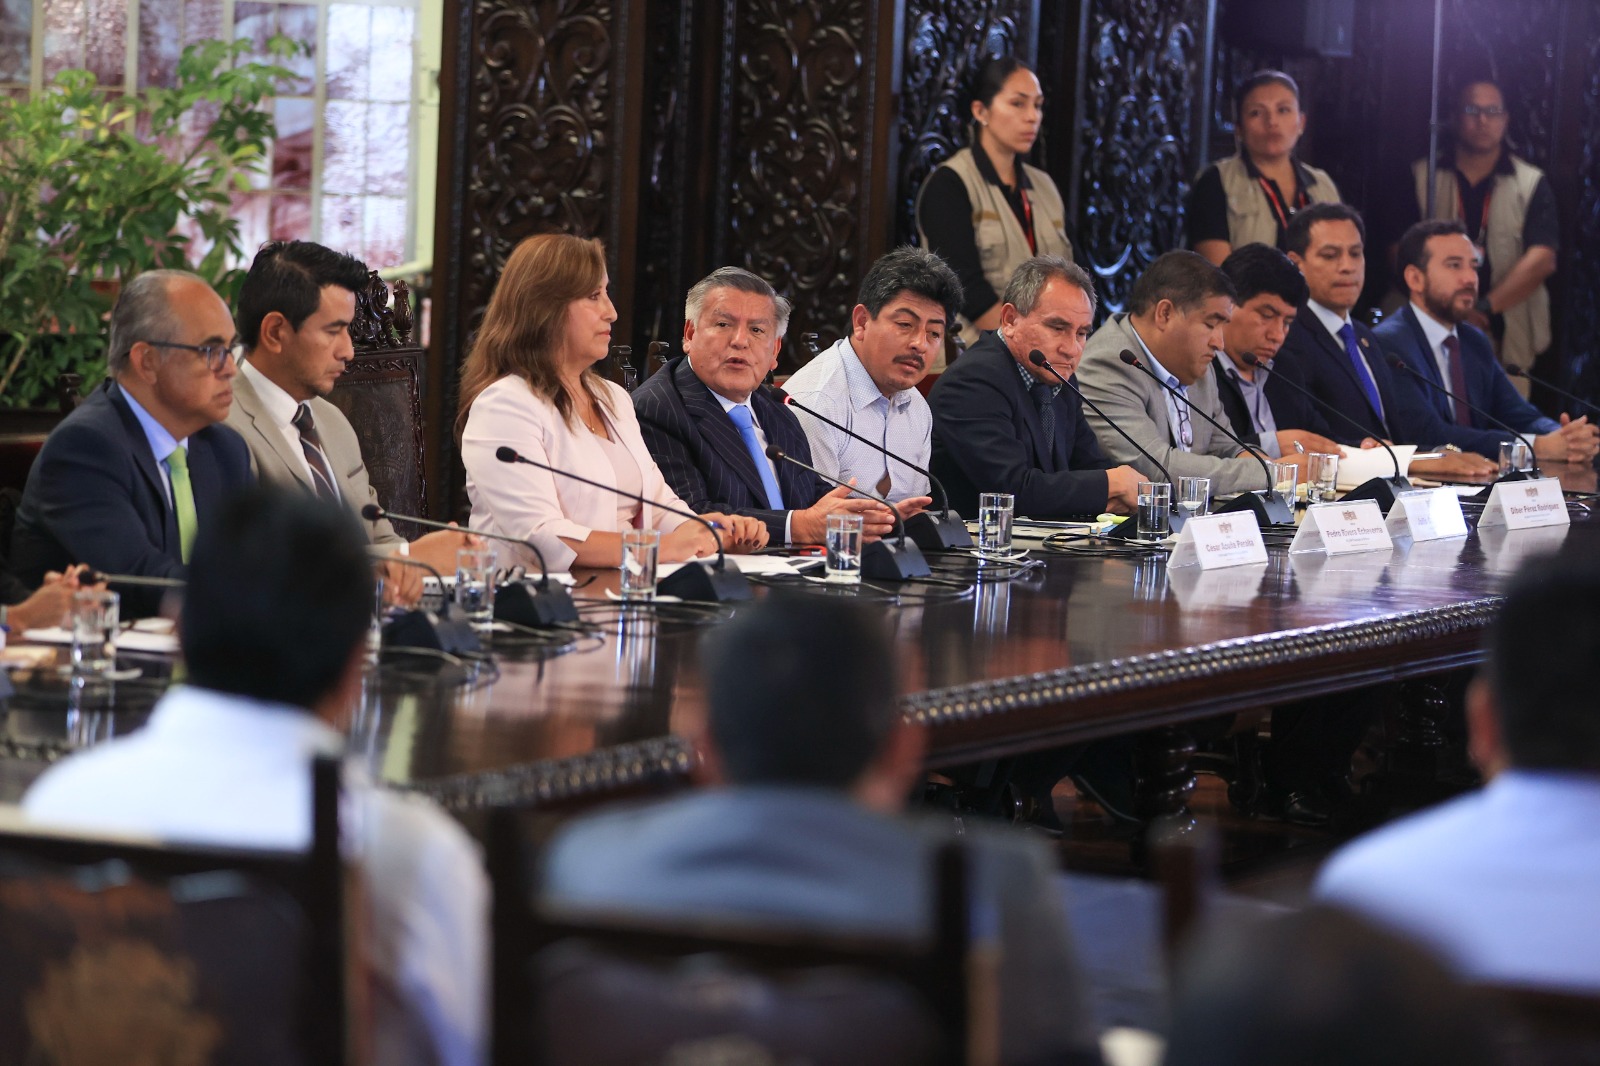 alcaldes de la libertad en reunion en palacio de gobierno con presidenta